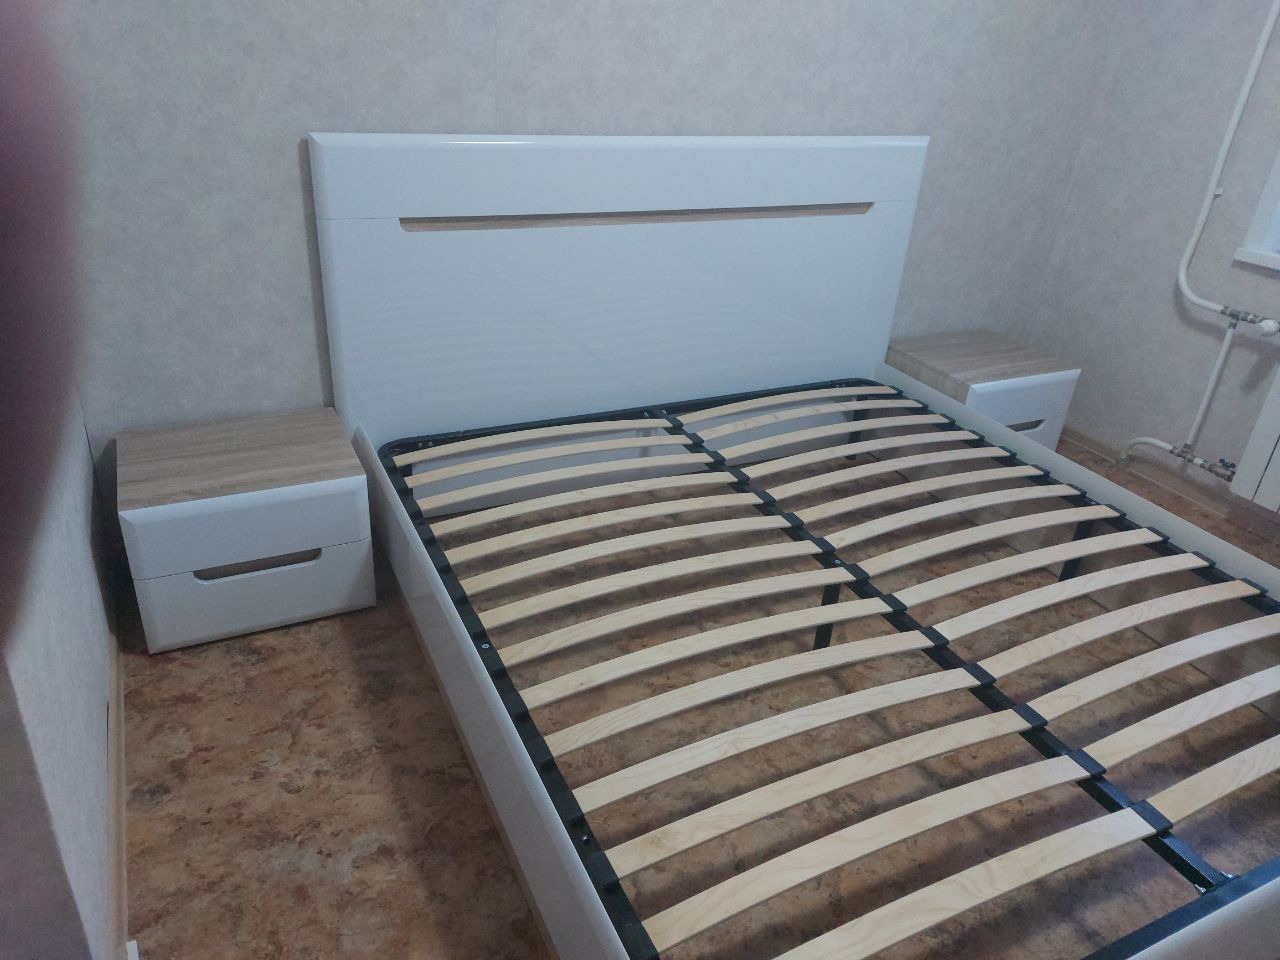 Односпальная кровать "Парма" 90 х 200 с подъемным механизмом цвет белый / венге